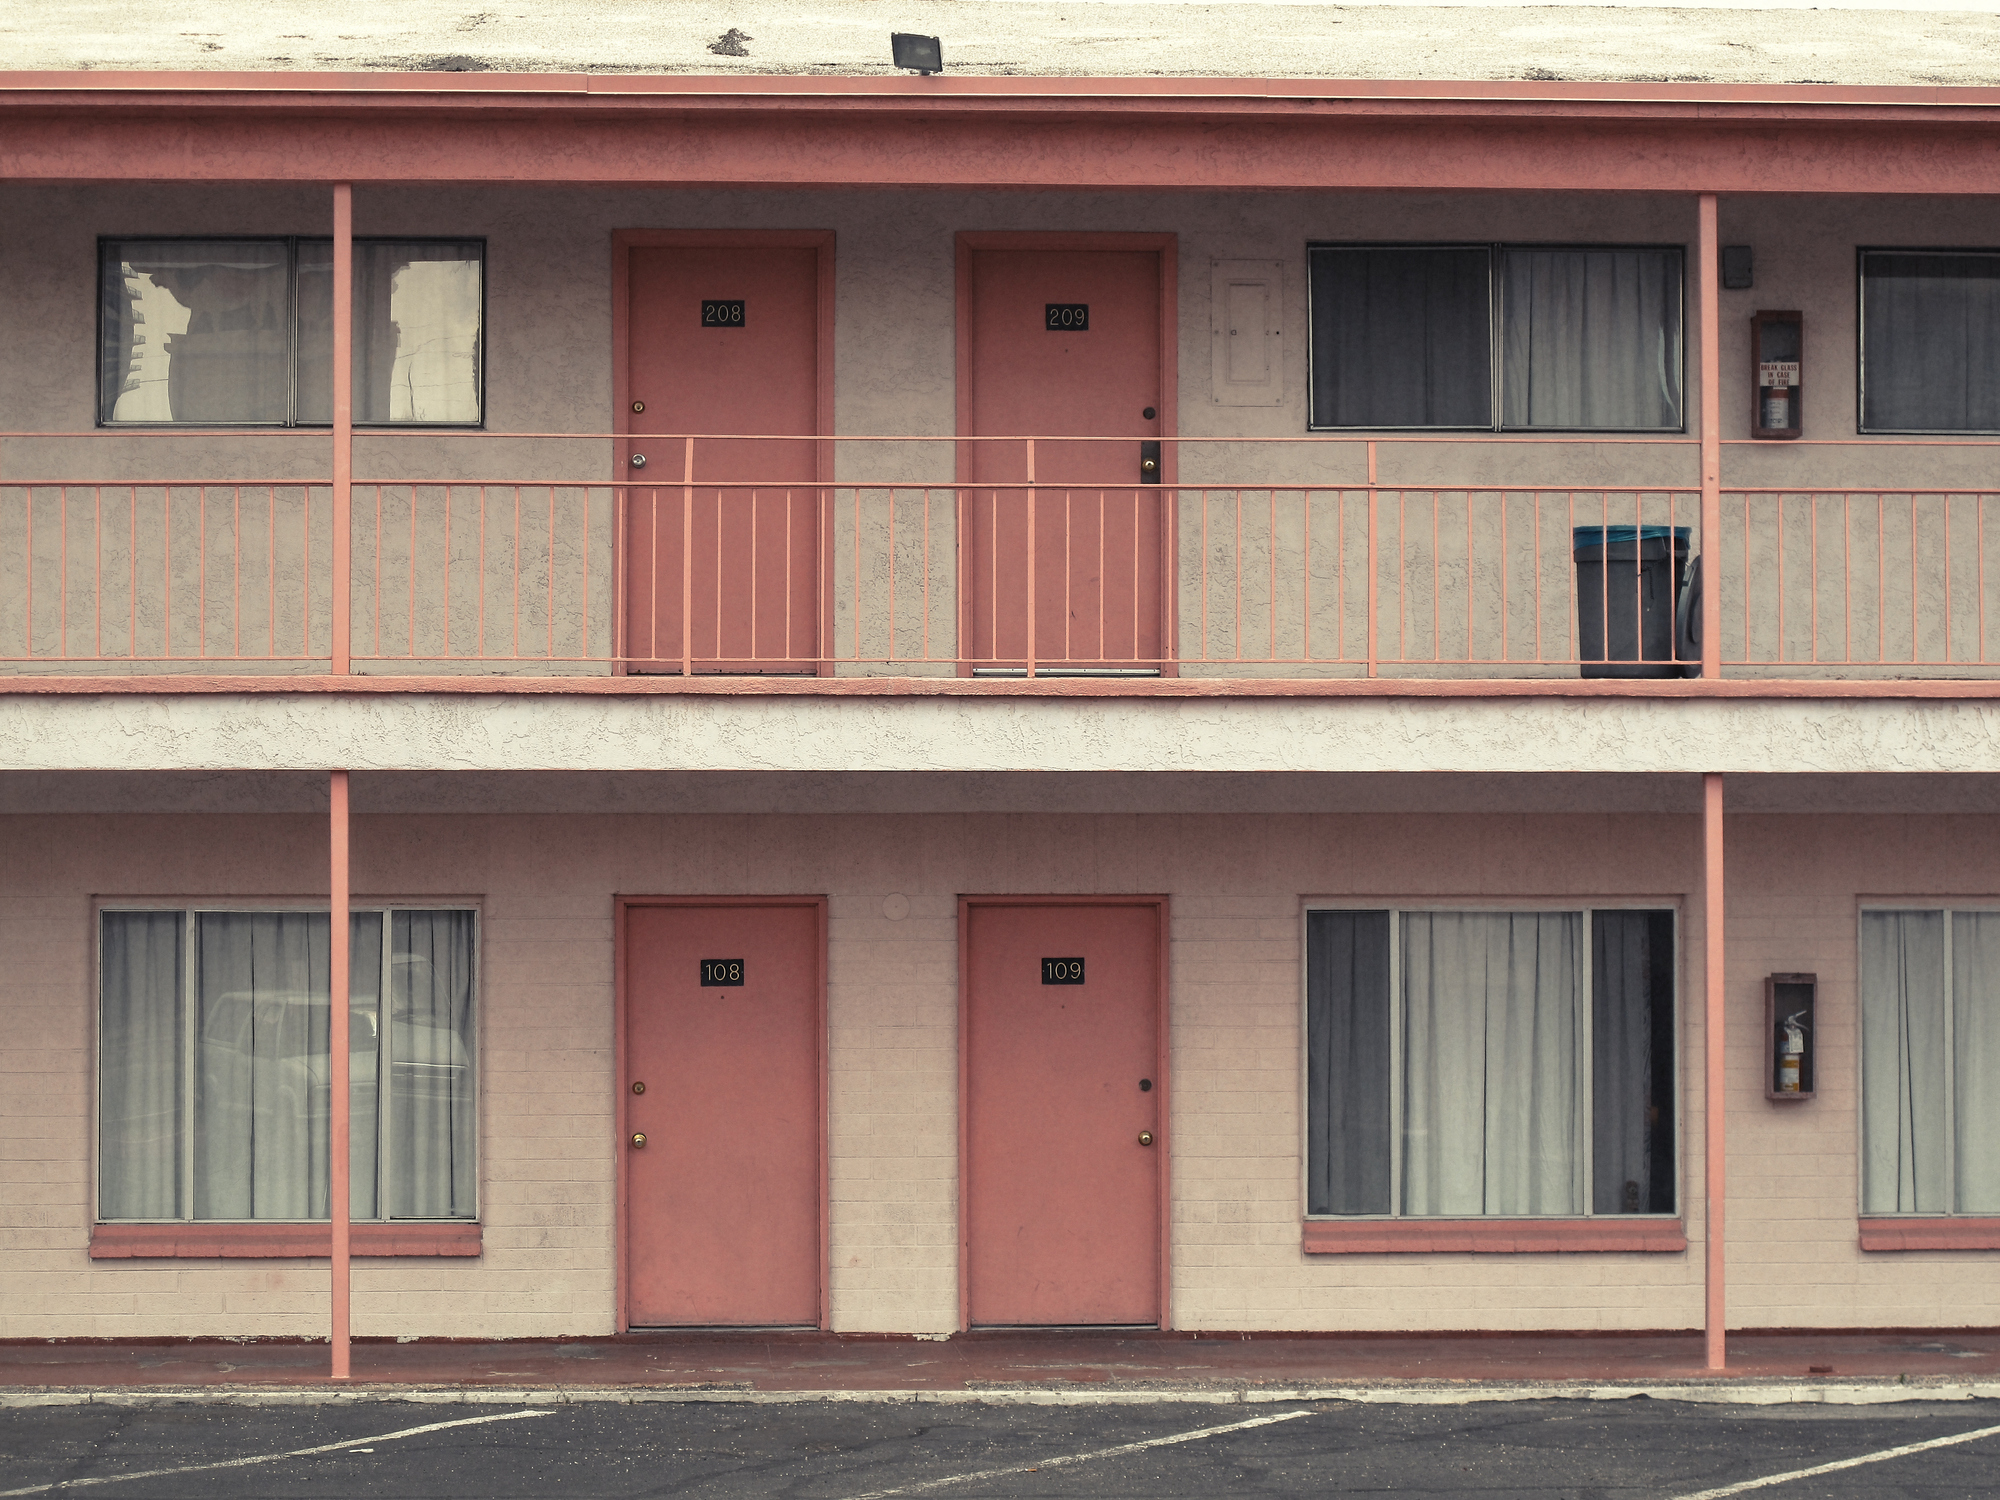 A motel